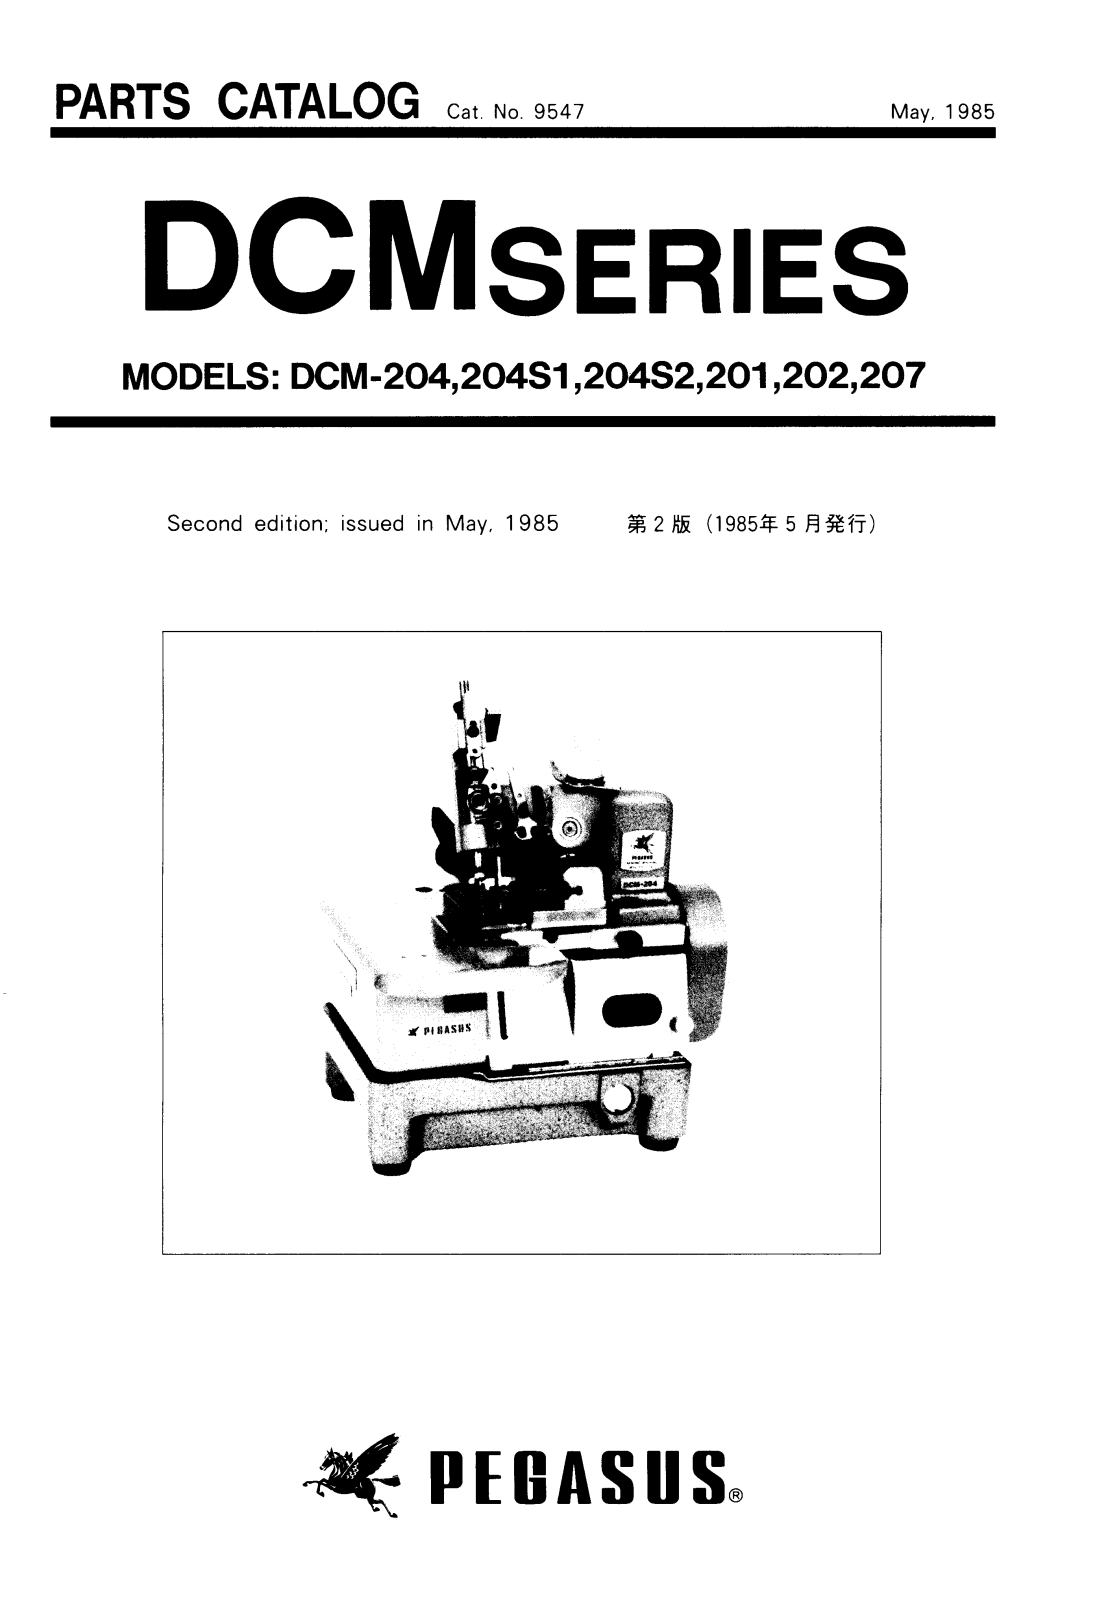 PEGASUS DCM-204, DCM-204S1, DCM-204S2, DCM-201, DCM-202 Parts List